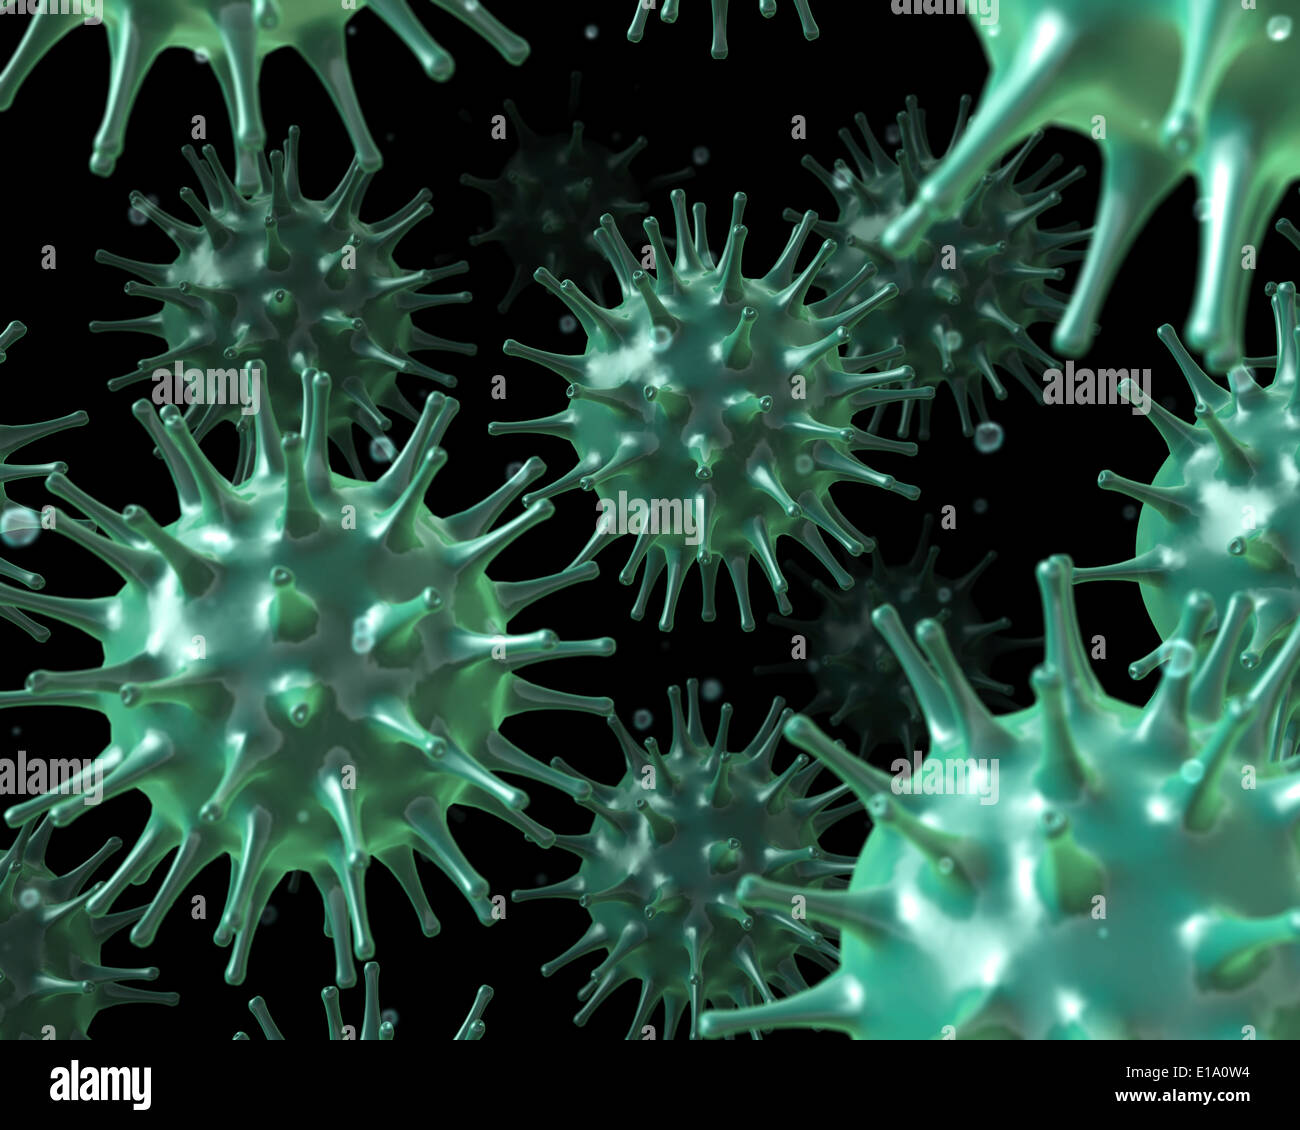 Viren im Inneren des menschlichen Körpers - Wissenschaft und Gesundheit Illustration Stockfoto